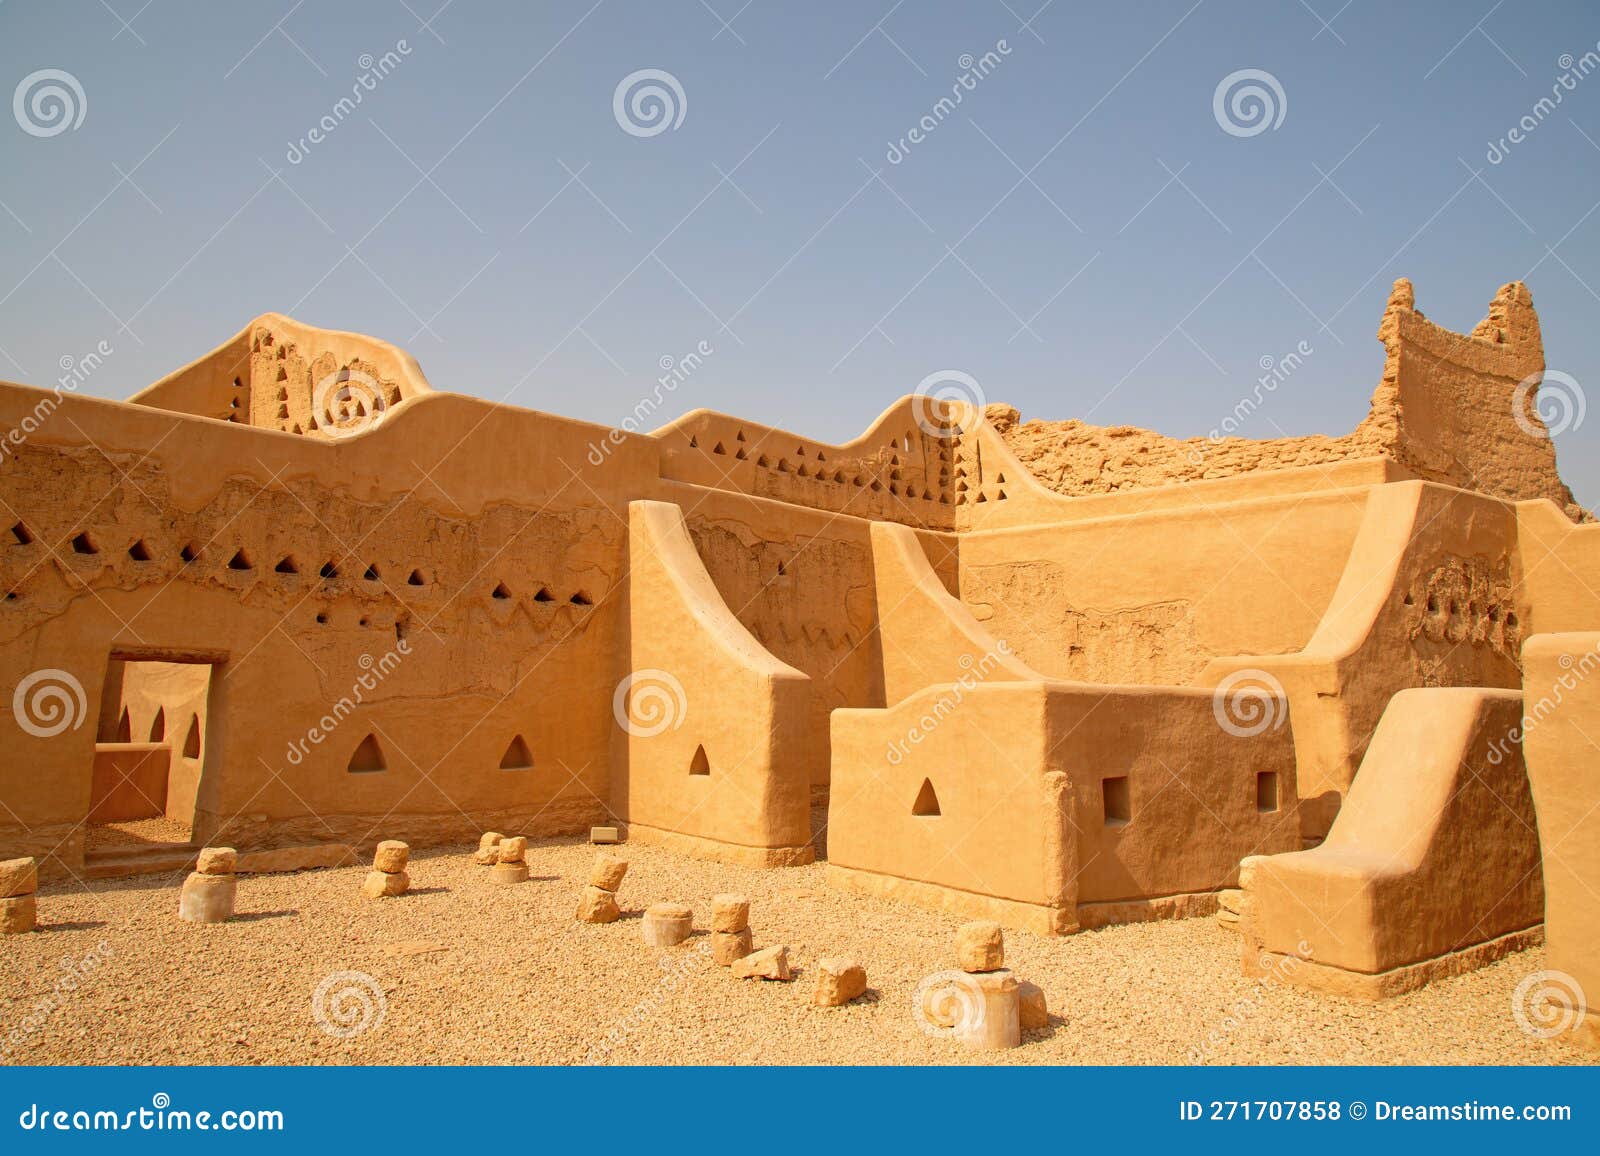 ruins of diriyah